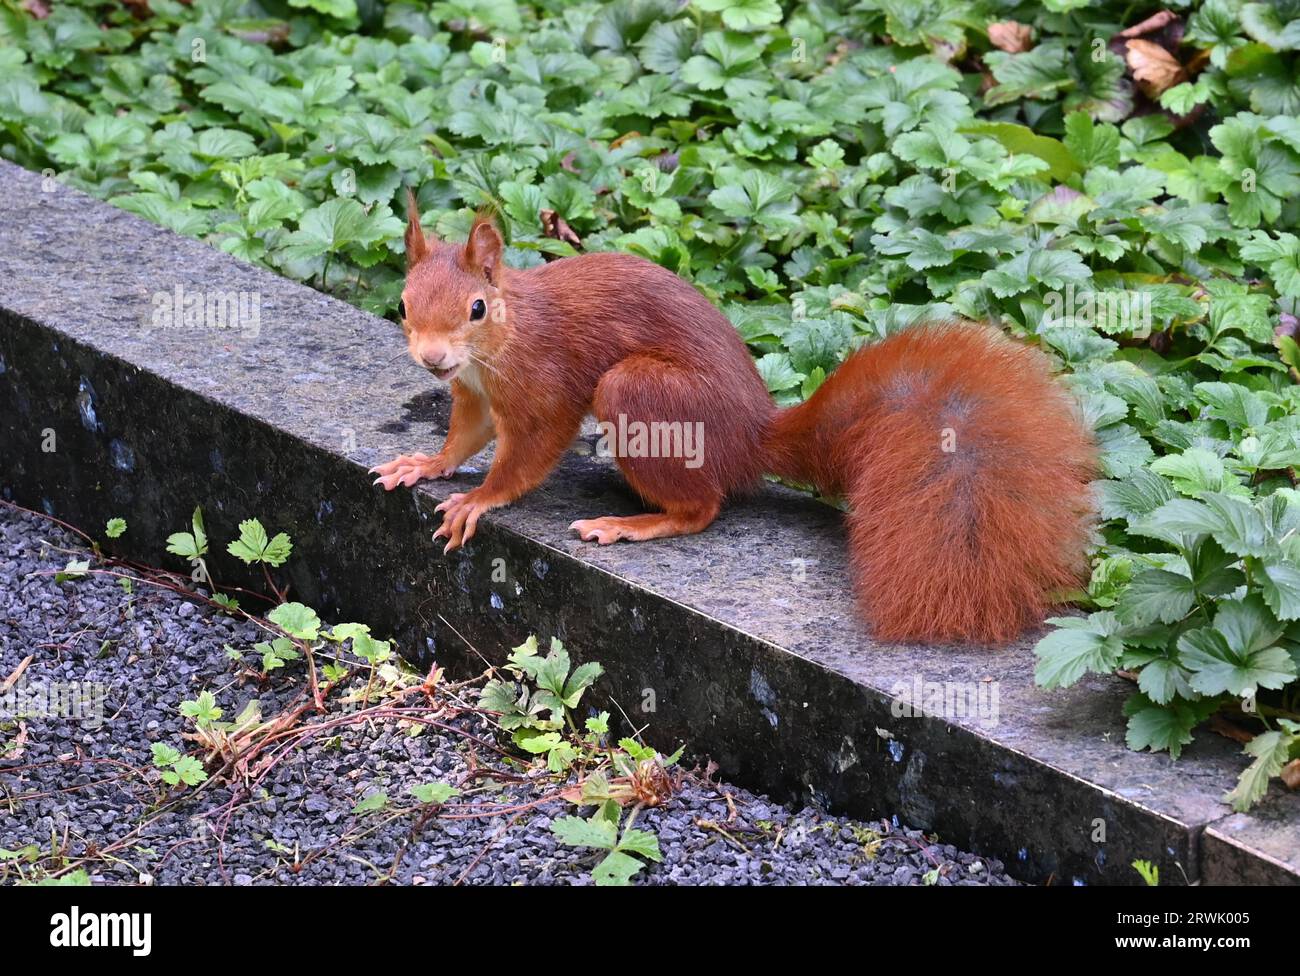 Colonia, Germania. 10 settembre 2023. Uno scoiattolo (Sciurus) si trova su un muro credito: Horst Galuschka/dpa/Horst Galuschka dpa/Alamy Live News Foto Stock